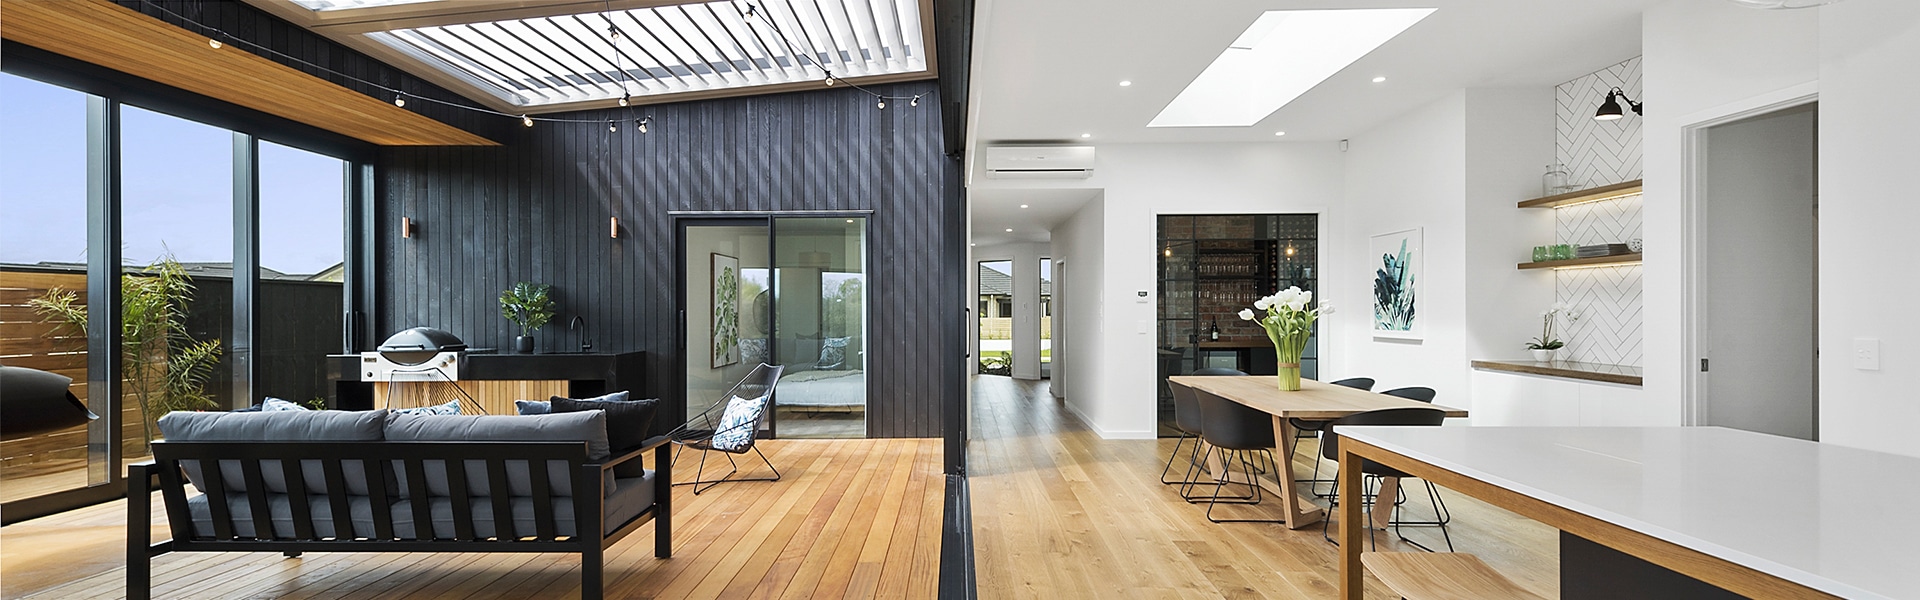 Show home indoor-outdoor living space